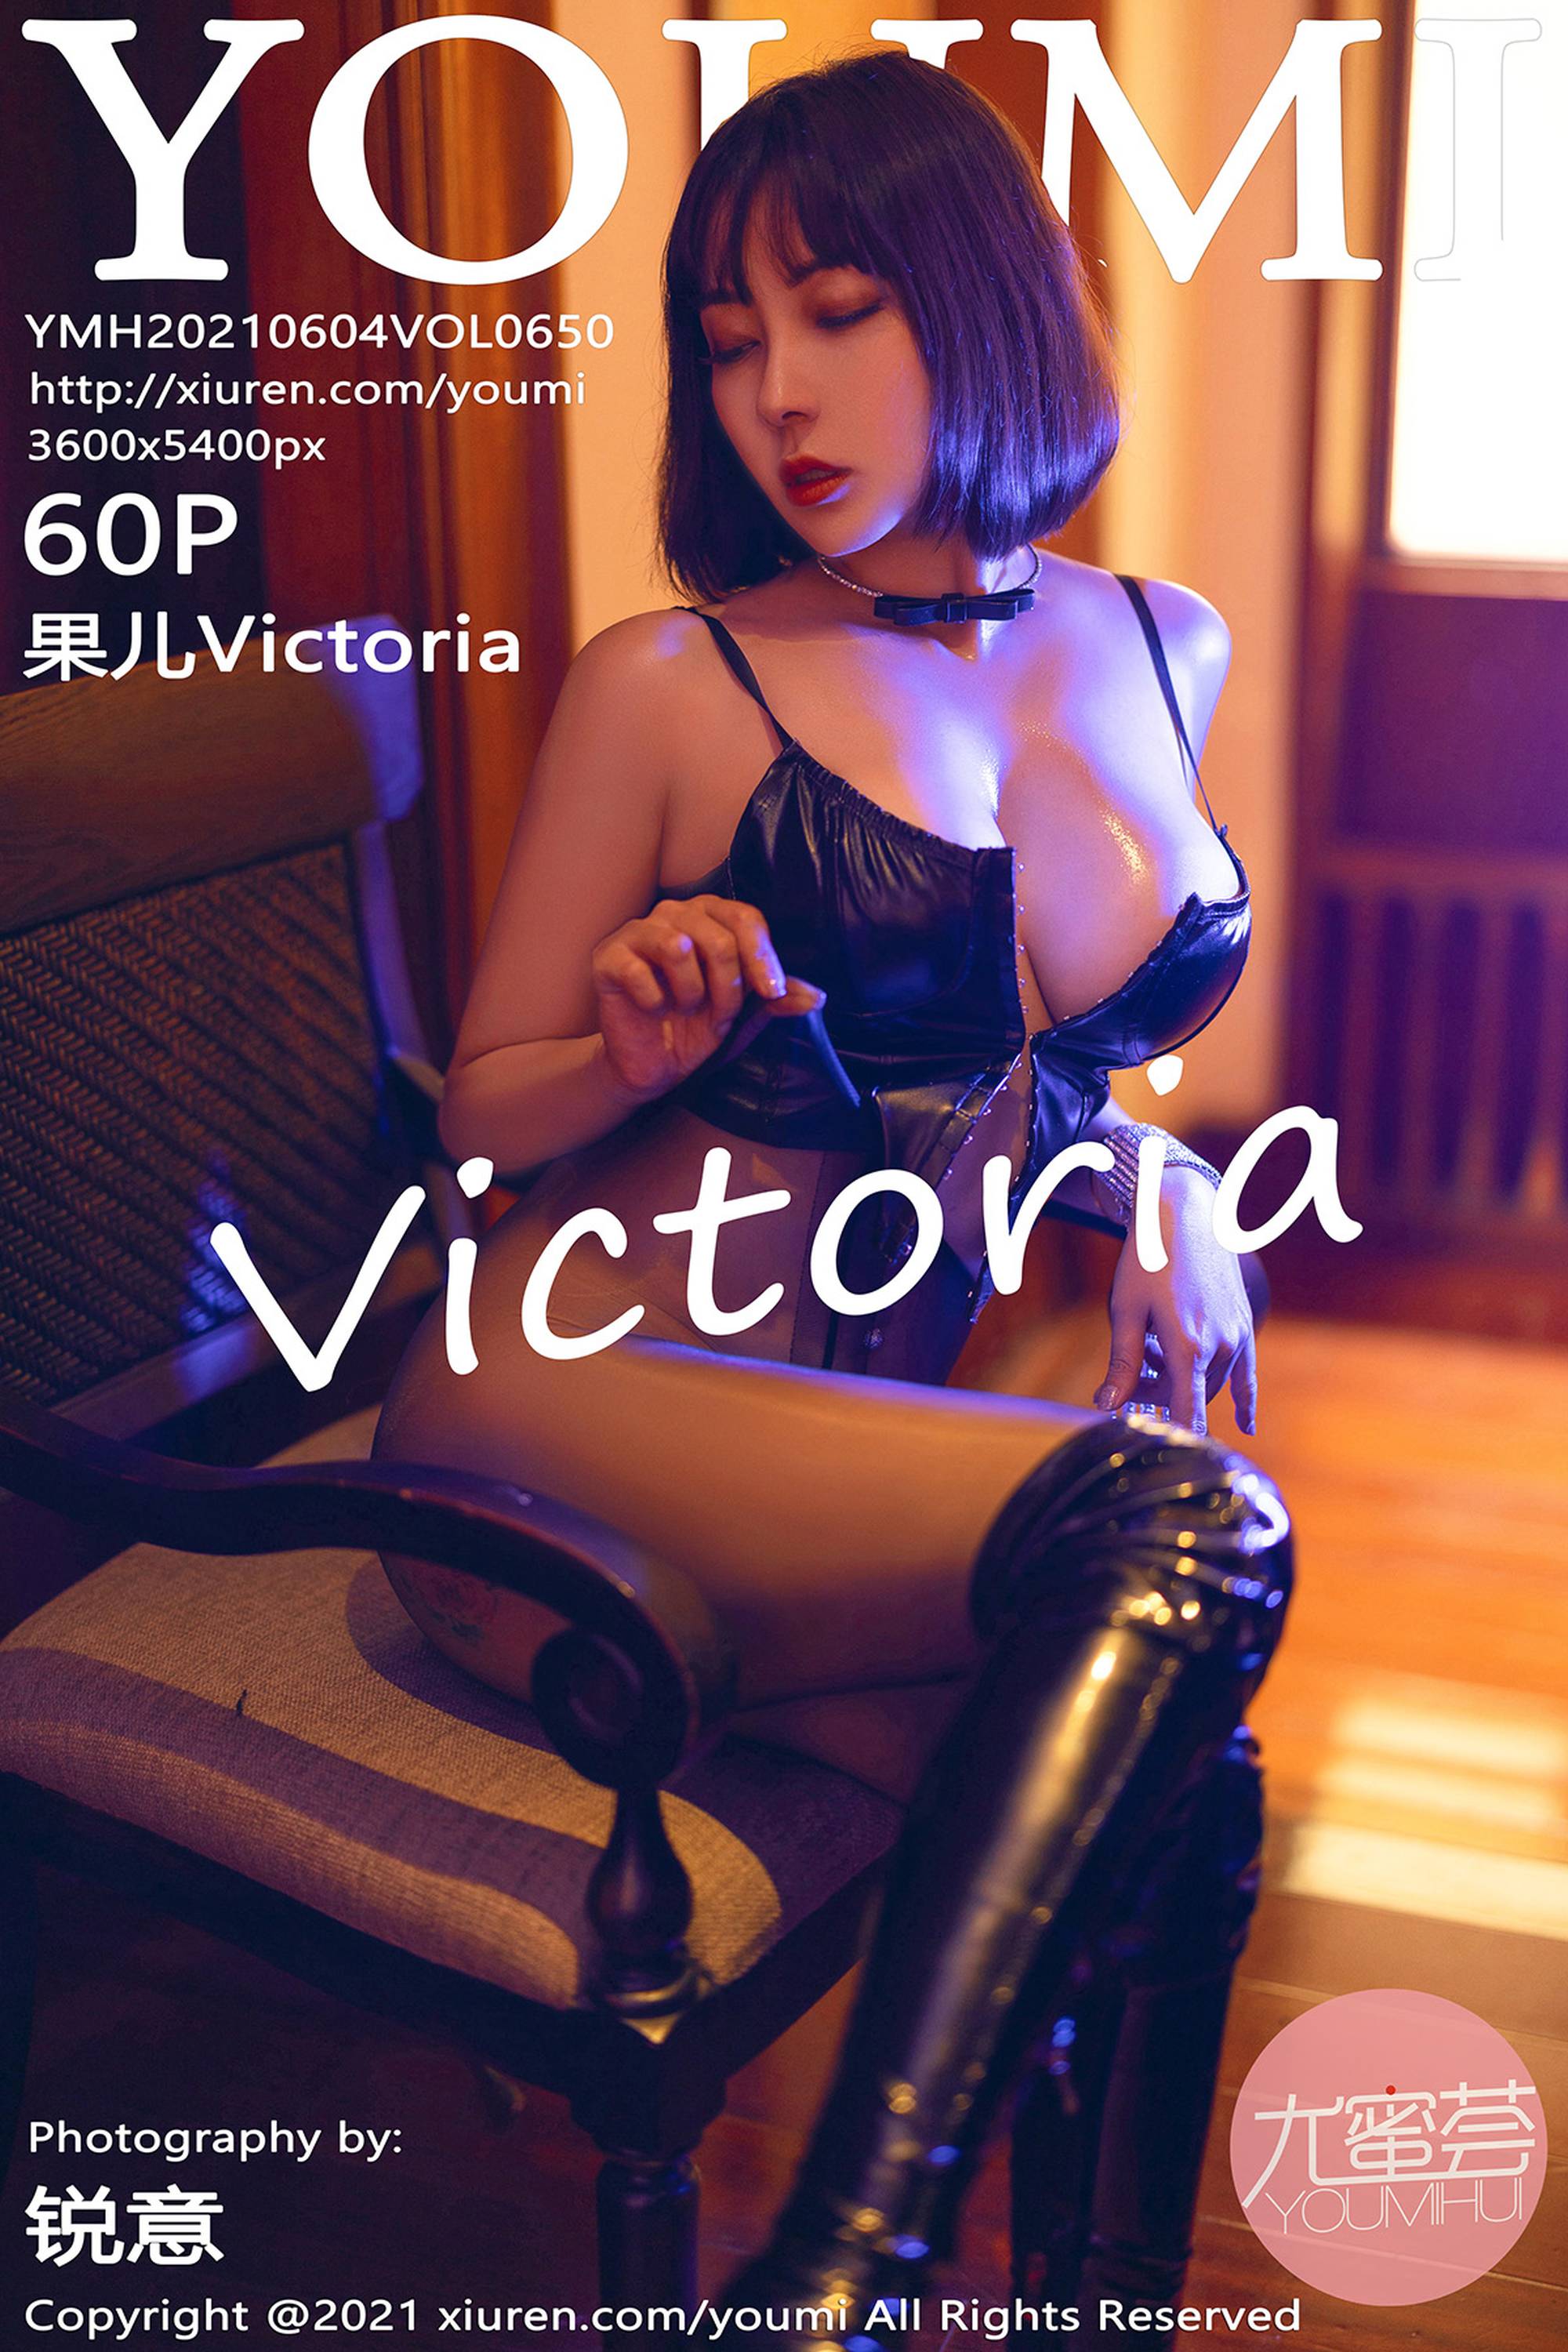 【YOUMI尤蜜荟】2021.06.04 Vol.650 果兒Victoria完整版無水印寫真【61P】 - 貼圖 - 絲襪美腿 -